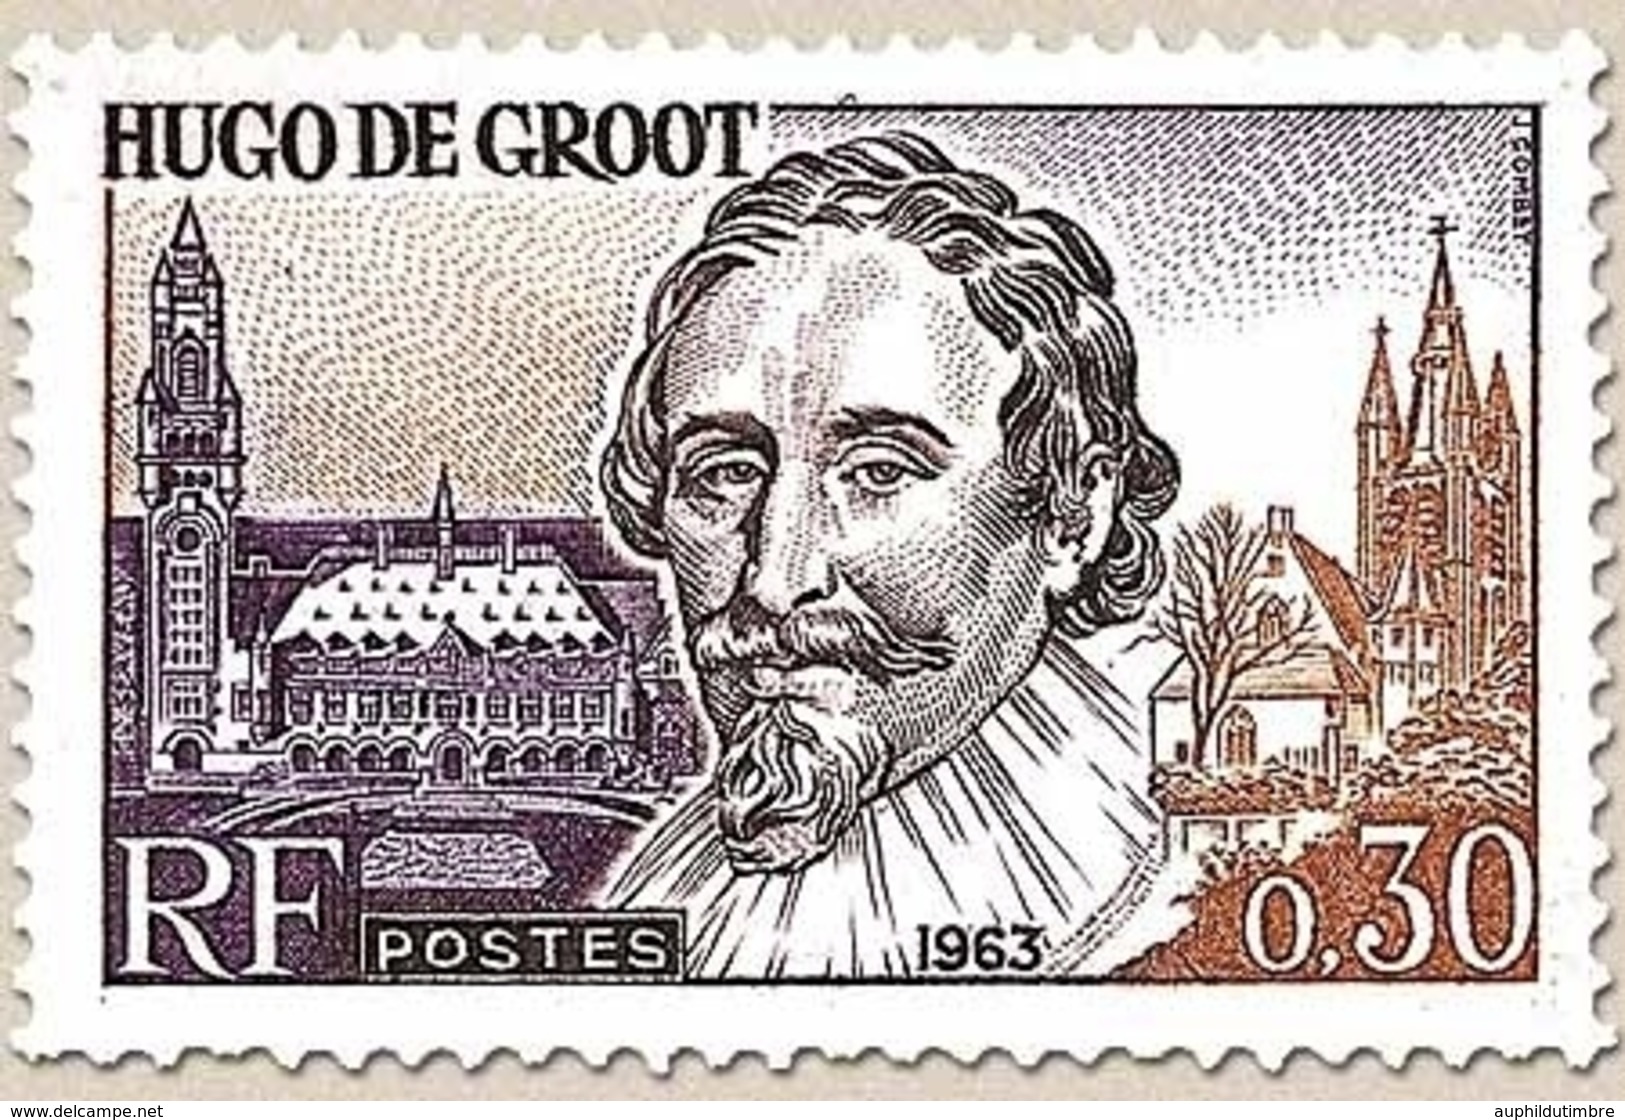 Grands Hommes De La CEE. Hugo De Groot, Homme D'Etat Néerlandais  30c. Brun-jaune, Violet Et Sépia Y1386 - Neufs